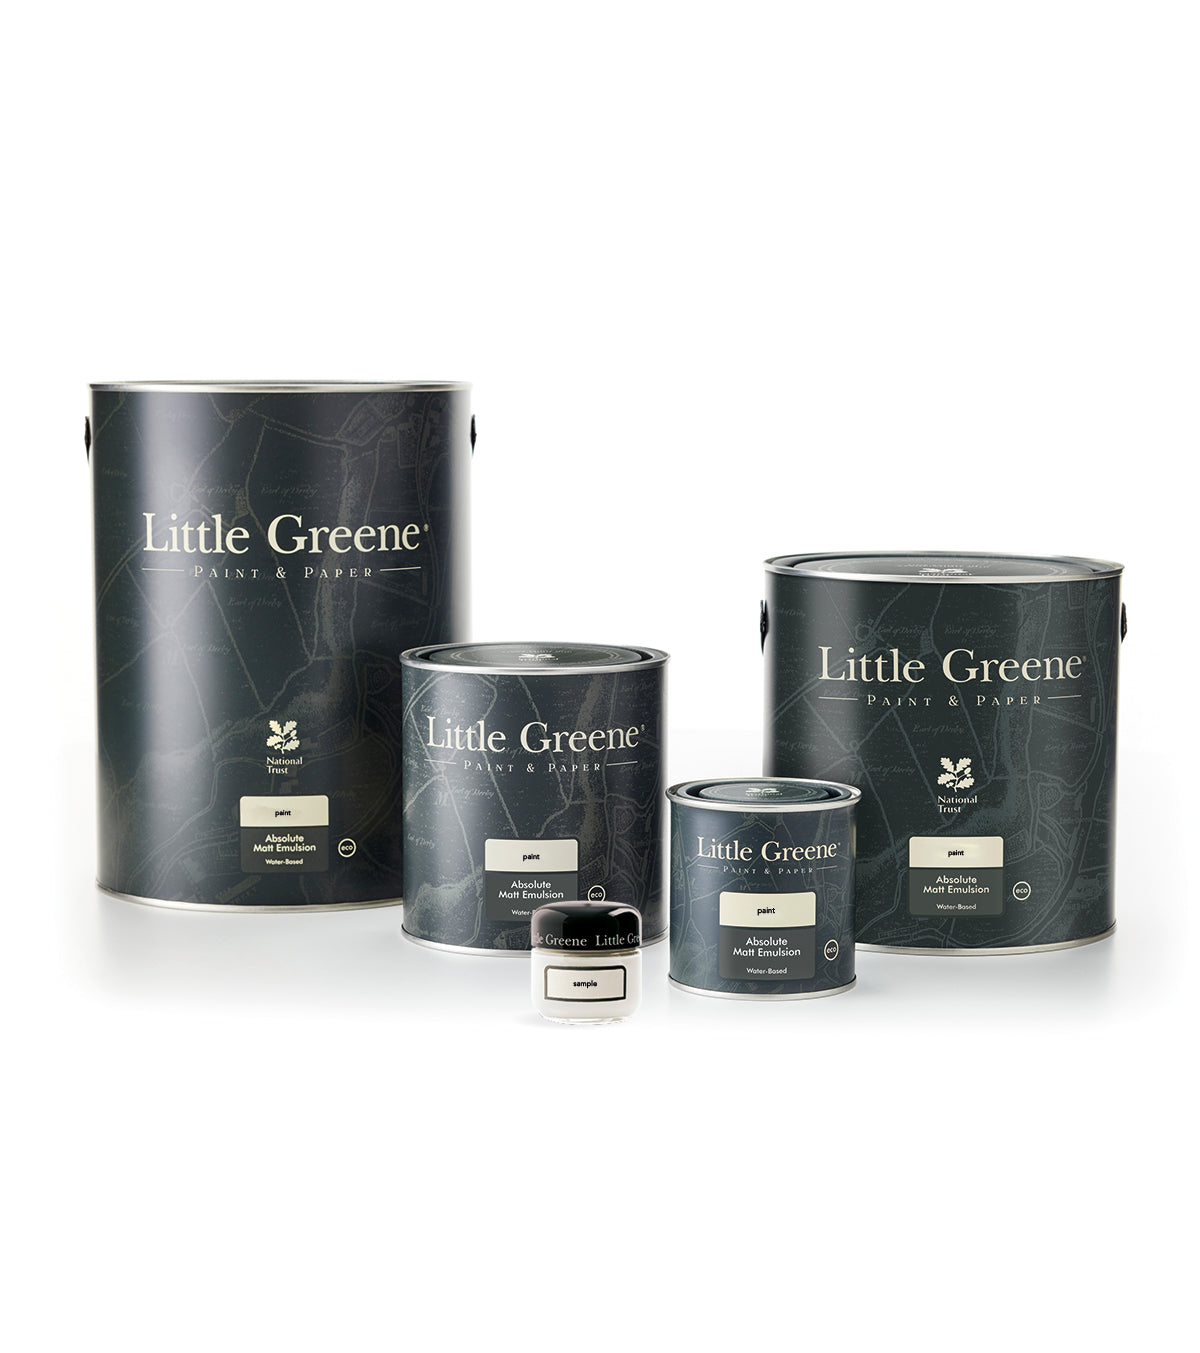 Little Greene paint - Borington green (295)